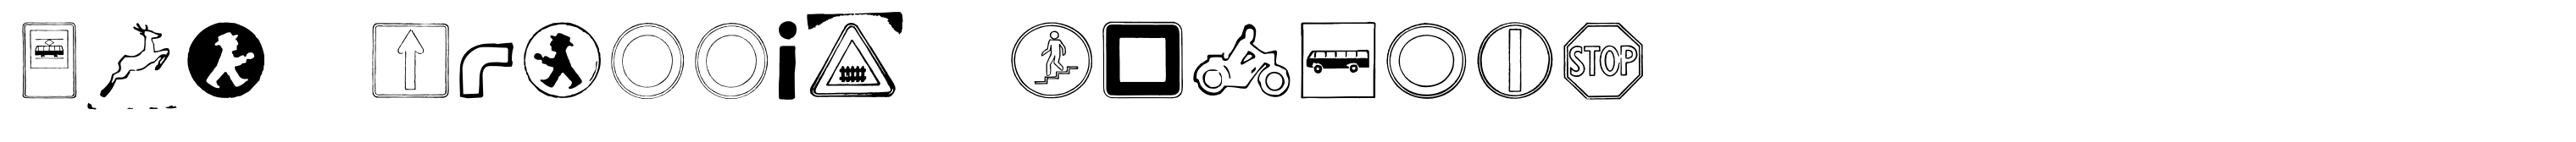 GDR Traffic Symbols